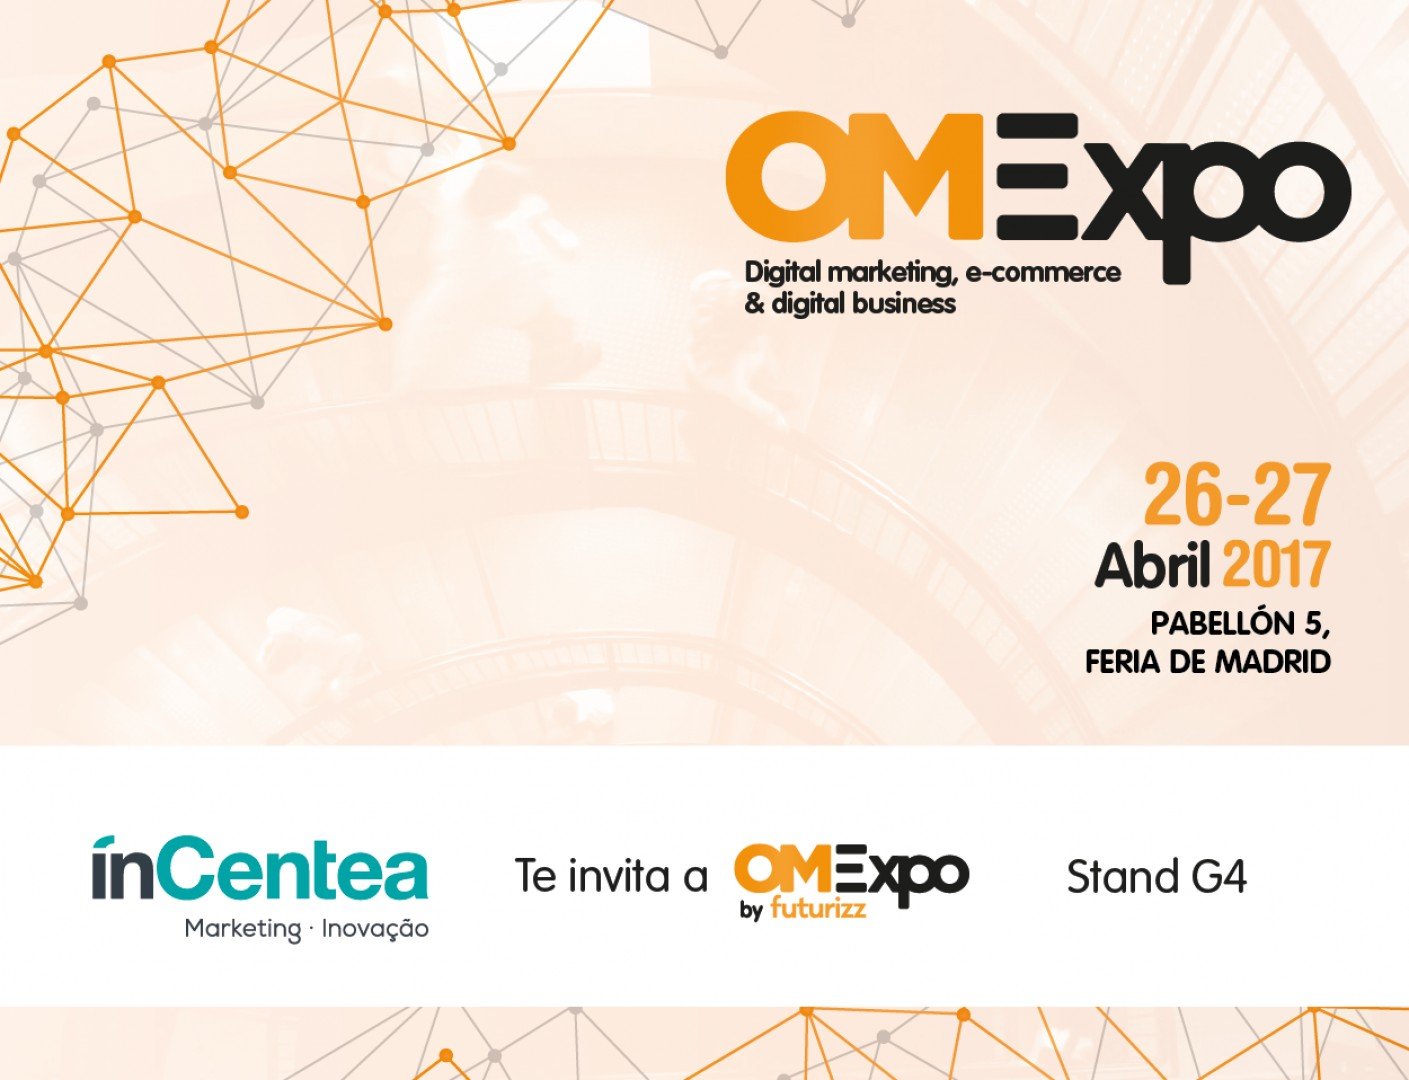 inCentea Marketing y Innovación estará presente en OMExpo 2017 Madrid